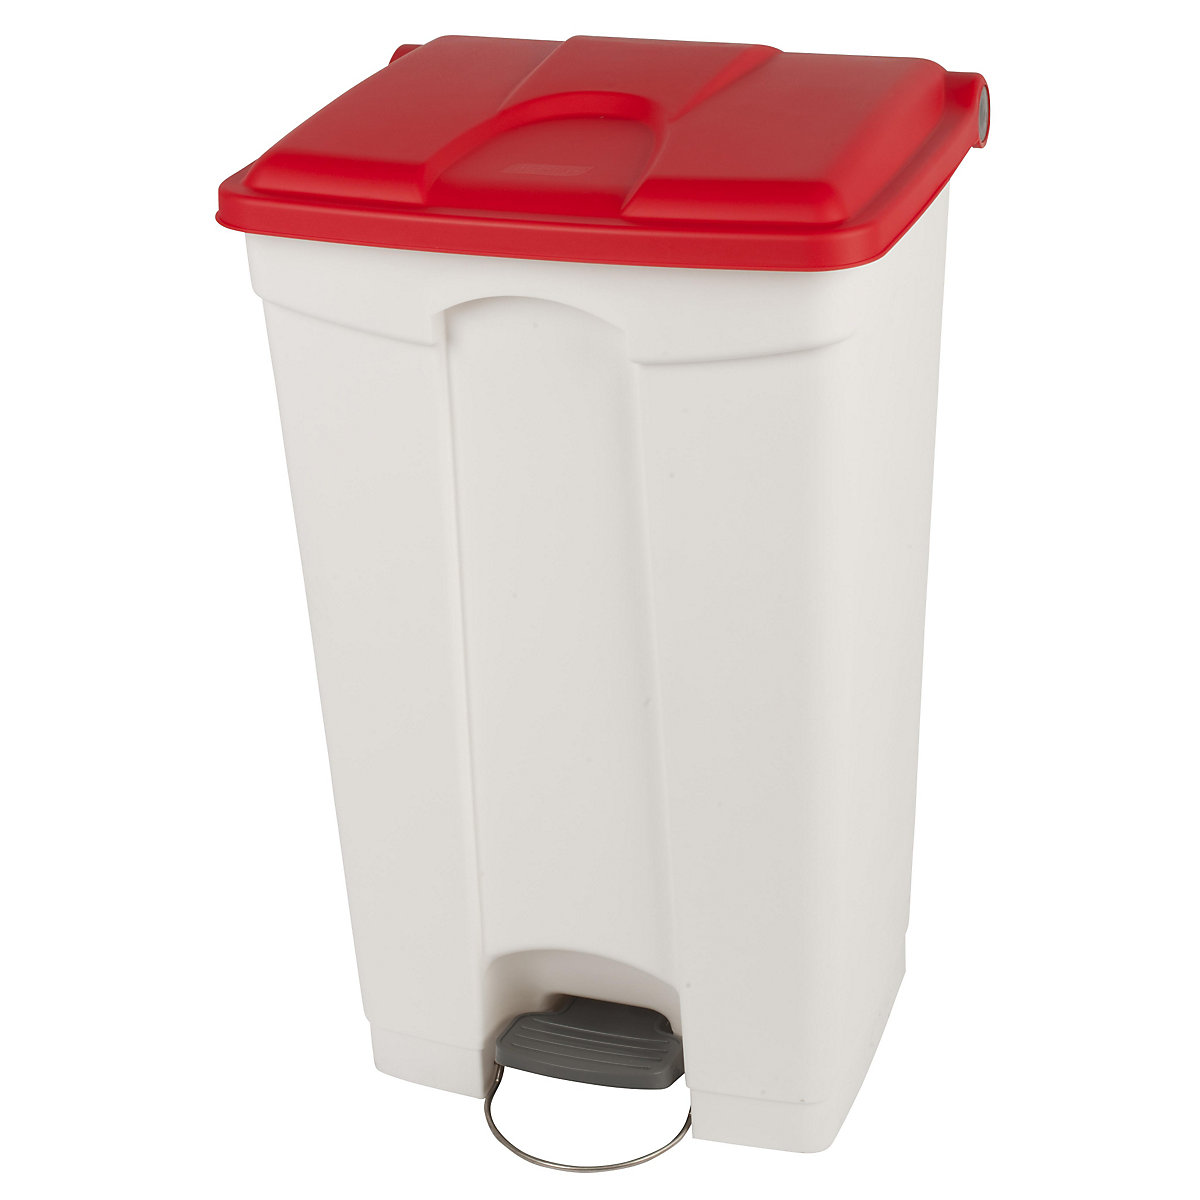 Coletor de lixo com pedal, volume 90 l, LxAxP 505 x 790 x 410 mm, branco, tampa vermelha-11